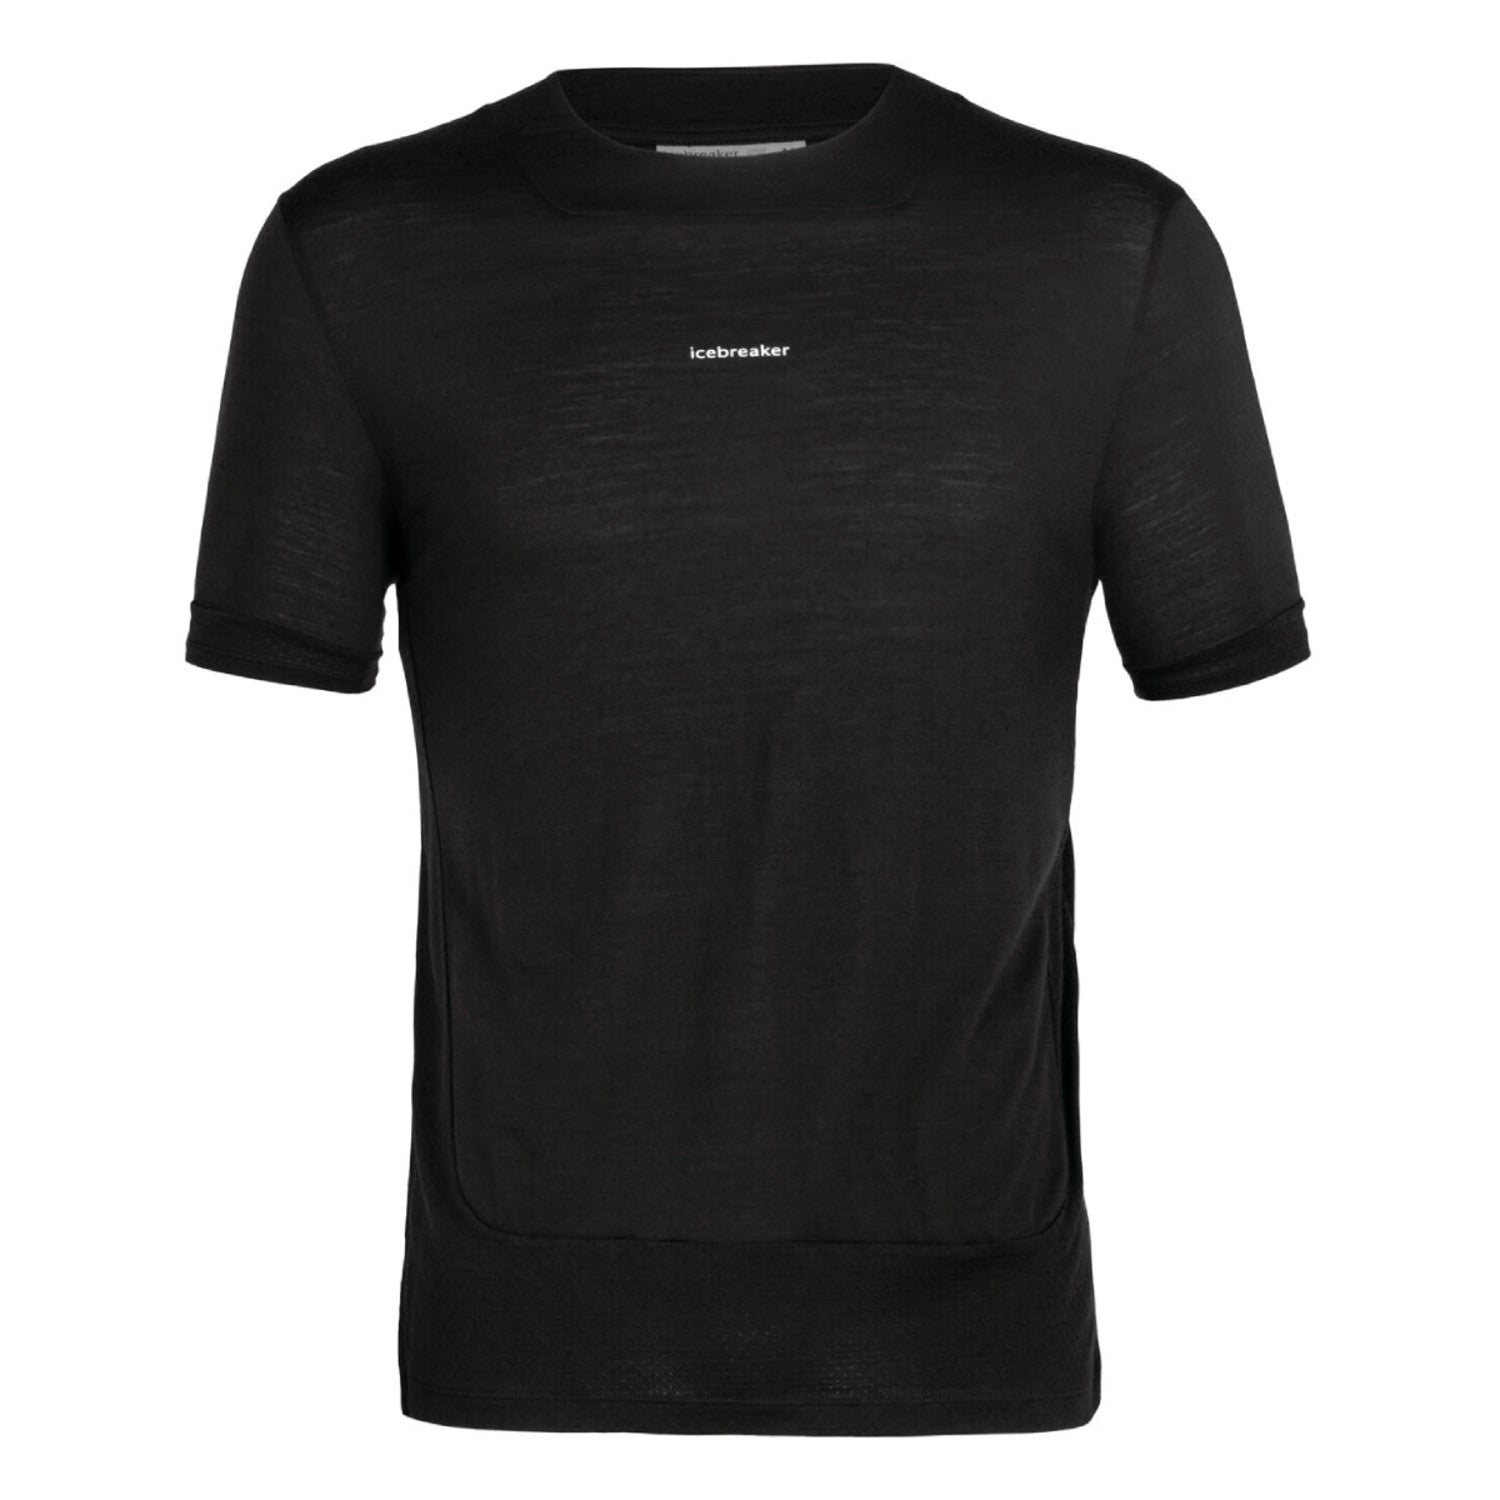 Men's Icebreaker Merino Meteroa Short Sleeve T-Shirt Black-Apparel-33-OFF